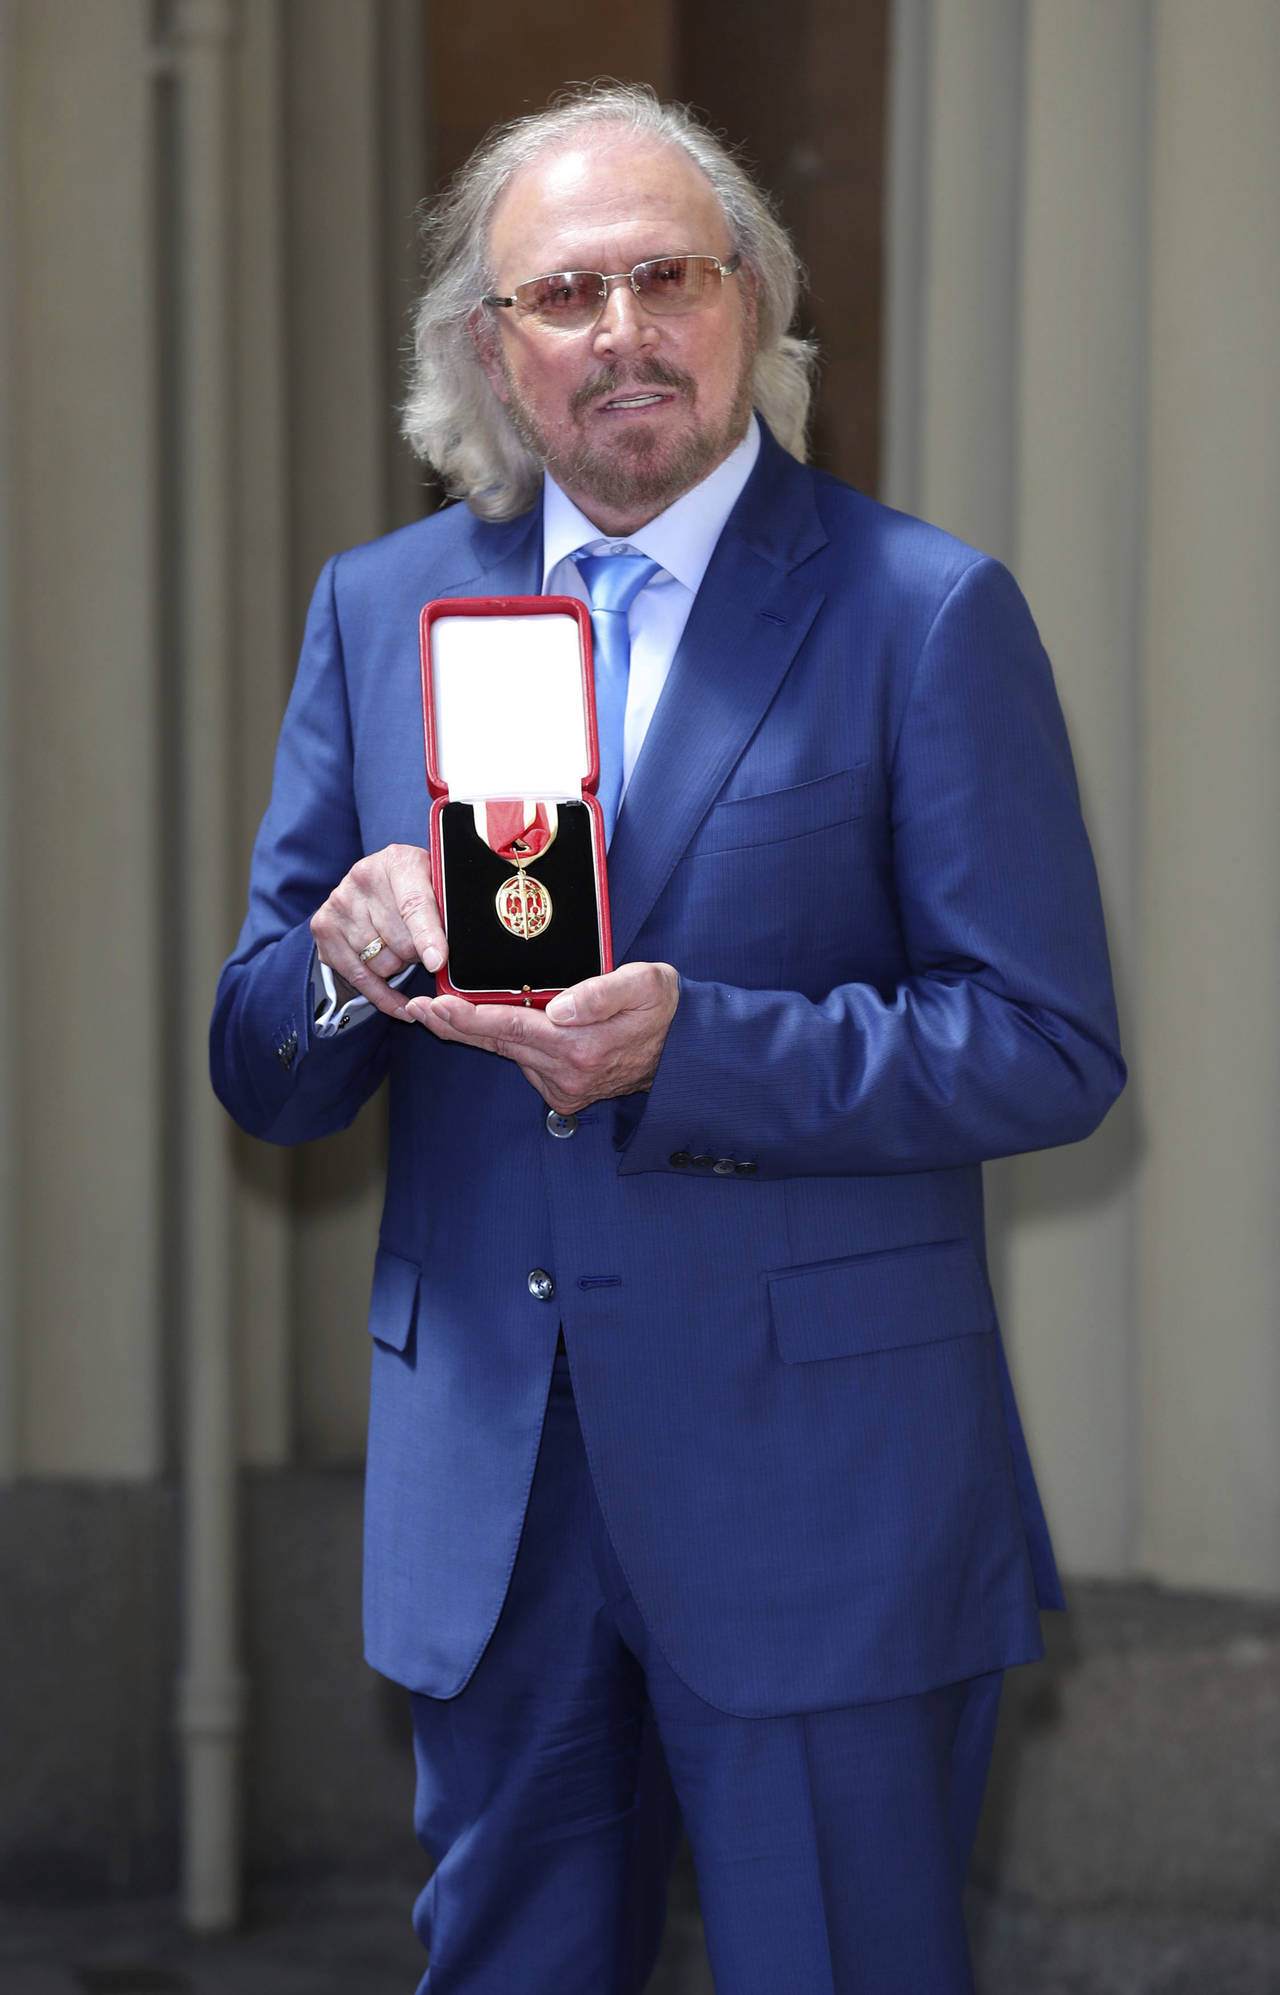 Reconocimiento. El cantante Barry Gibb recibió el título de caballero en el Palacio de Buckingham. (AP)